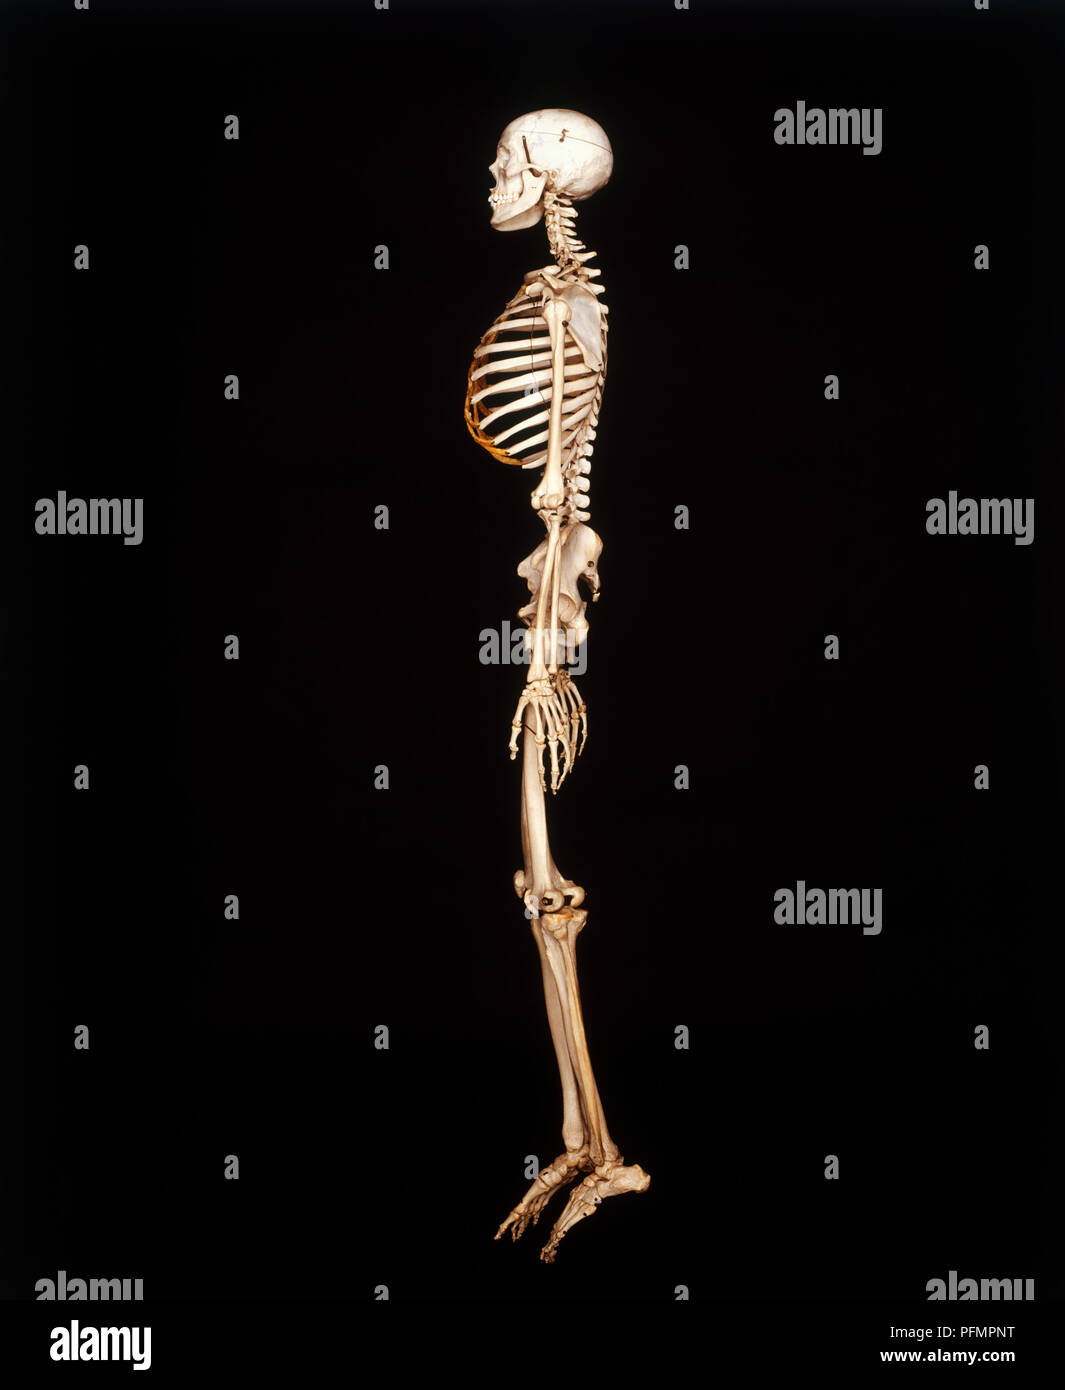 Human skeleton, side view Stock Photo